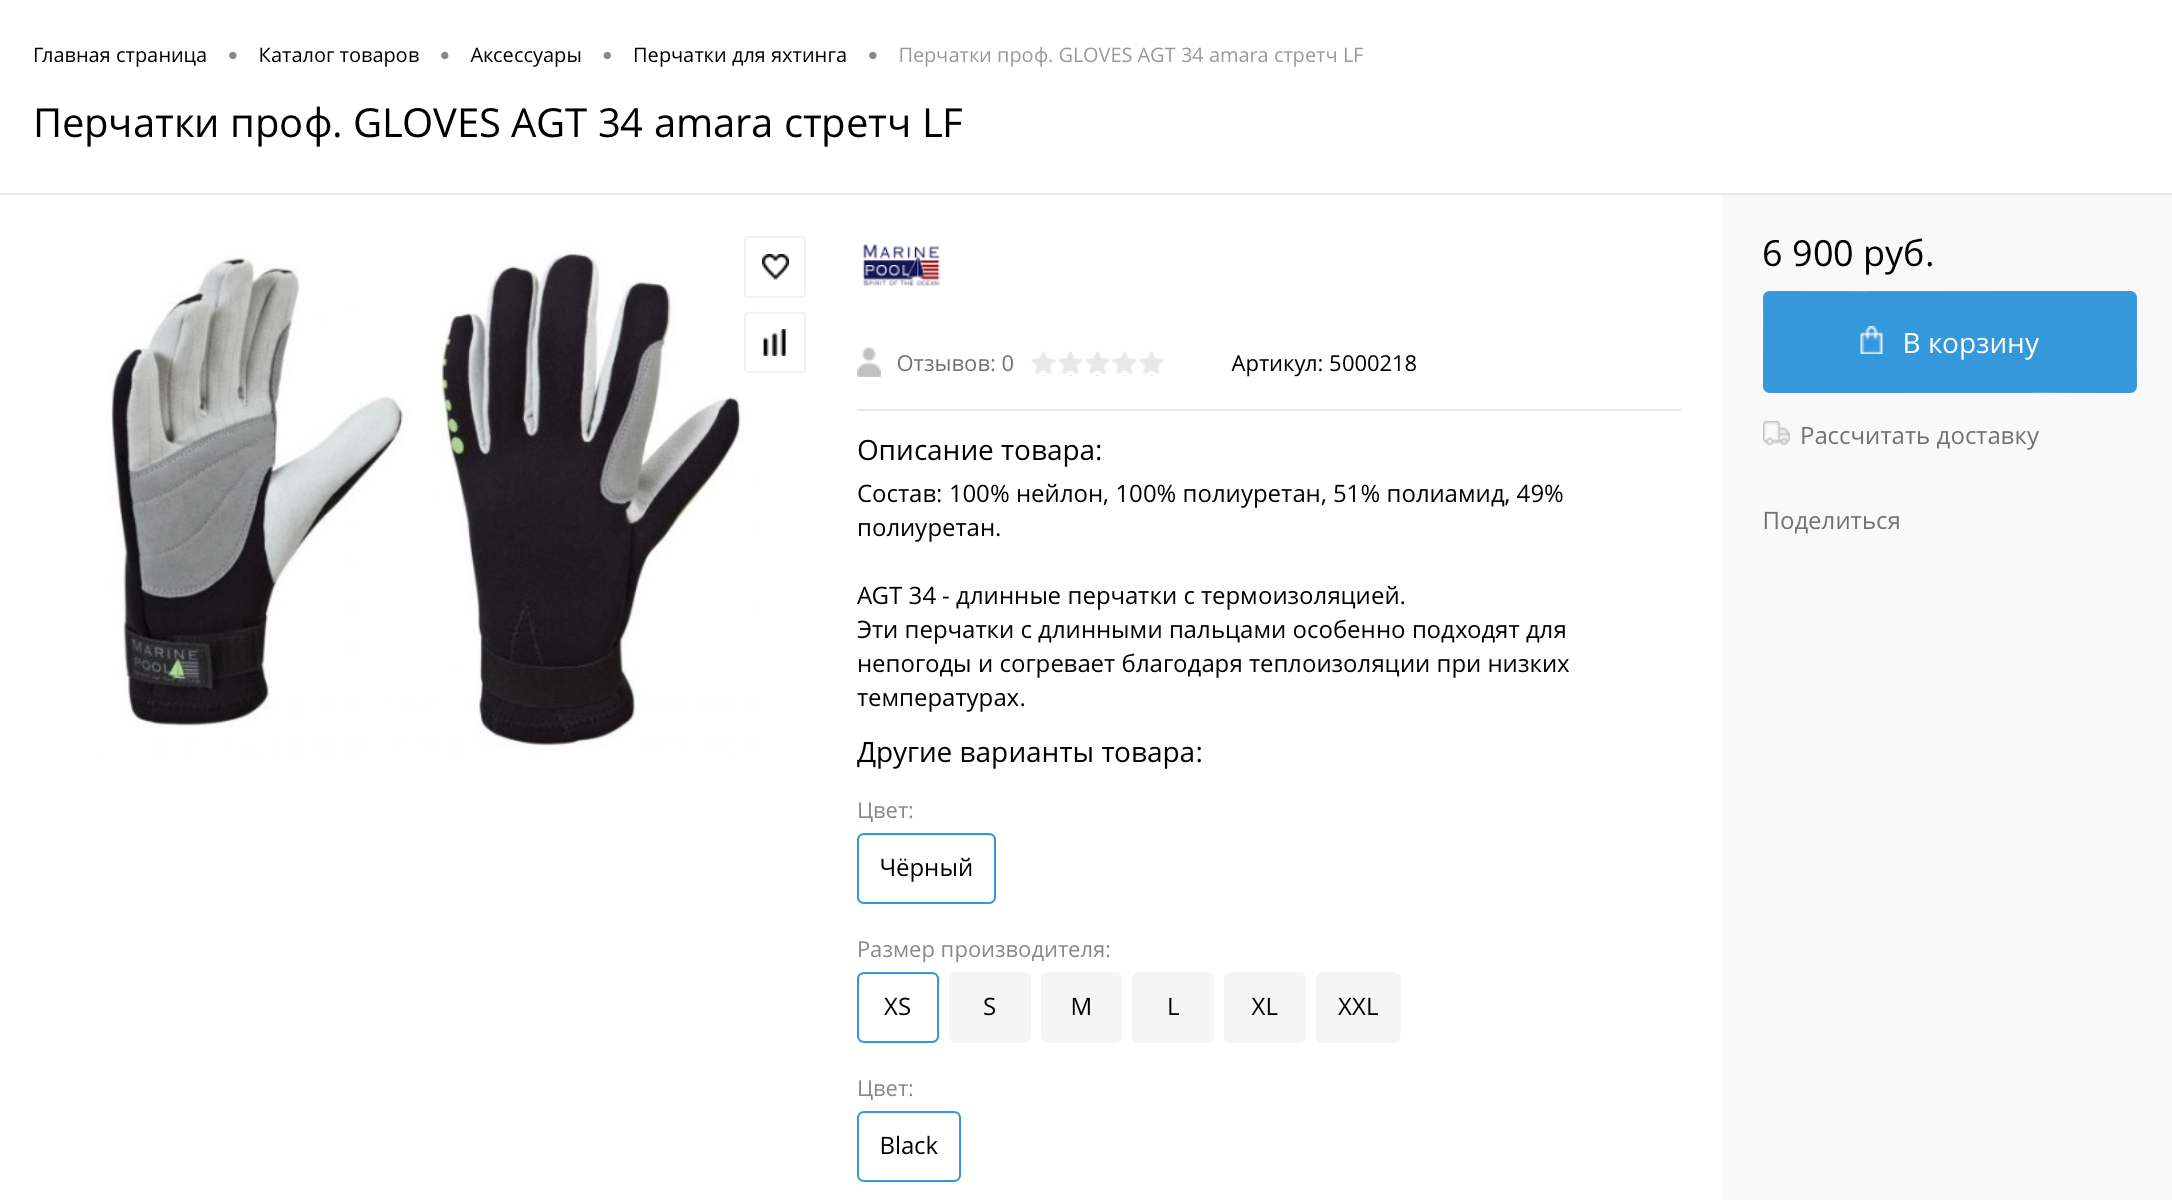 Профессиональные перчатки GLOVES АGT34 amara стретч LF за 6900 ₽. Источник: Fashion marine